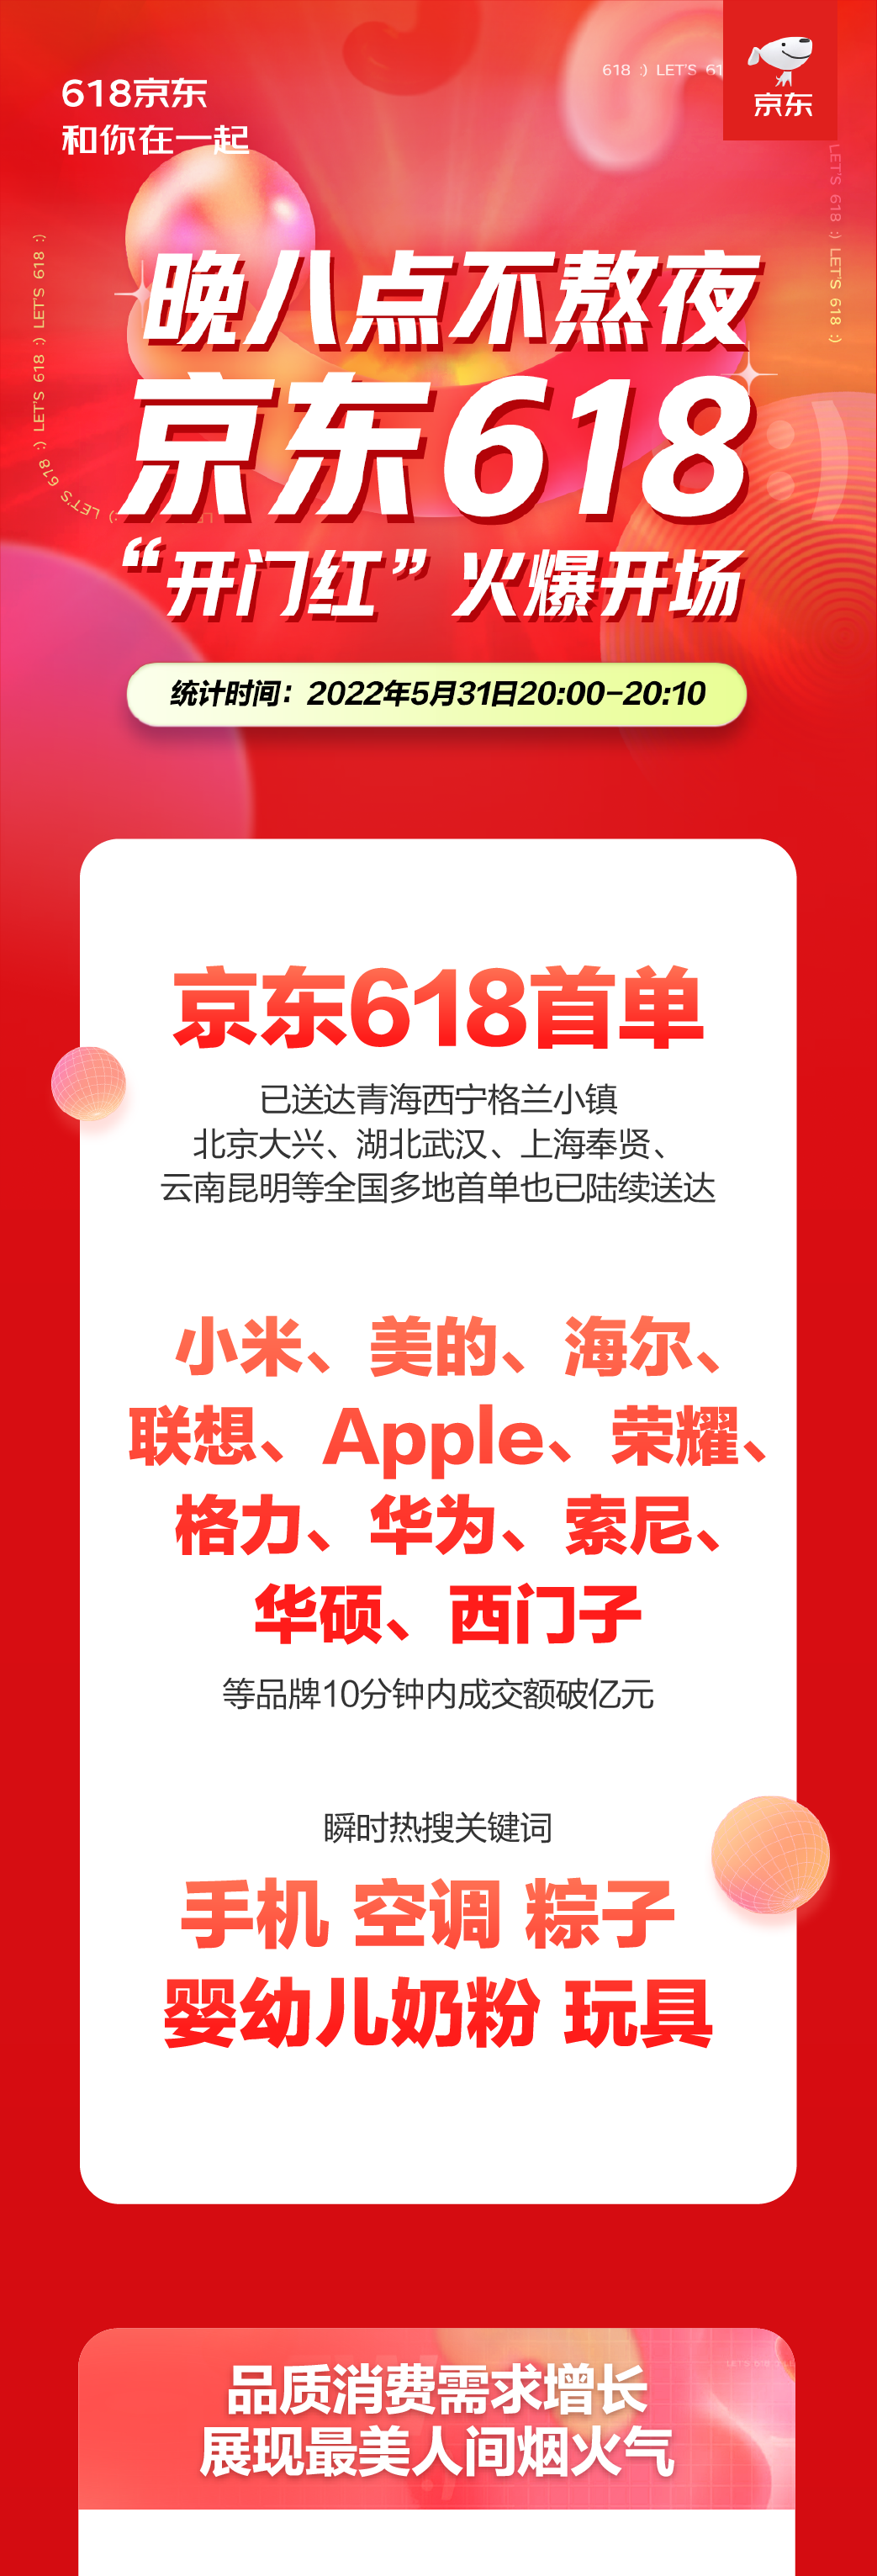 京东618晚8点火爆开场 小米、美的、海尔、联想、Apple等品牌瞬间破亿